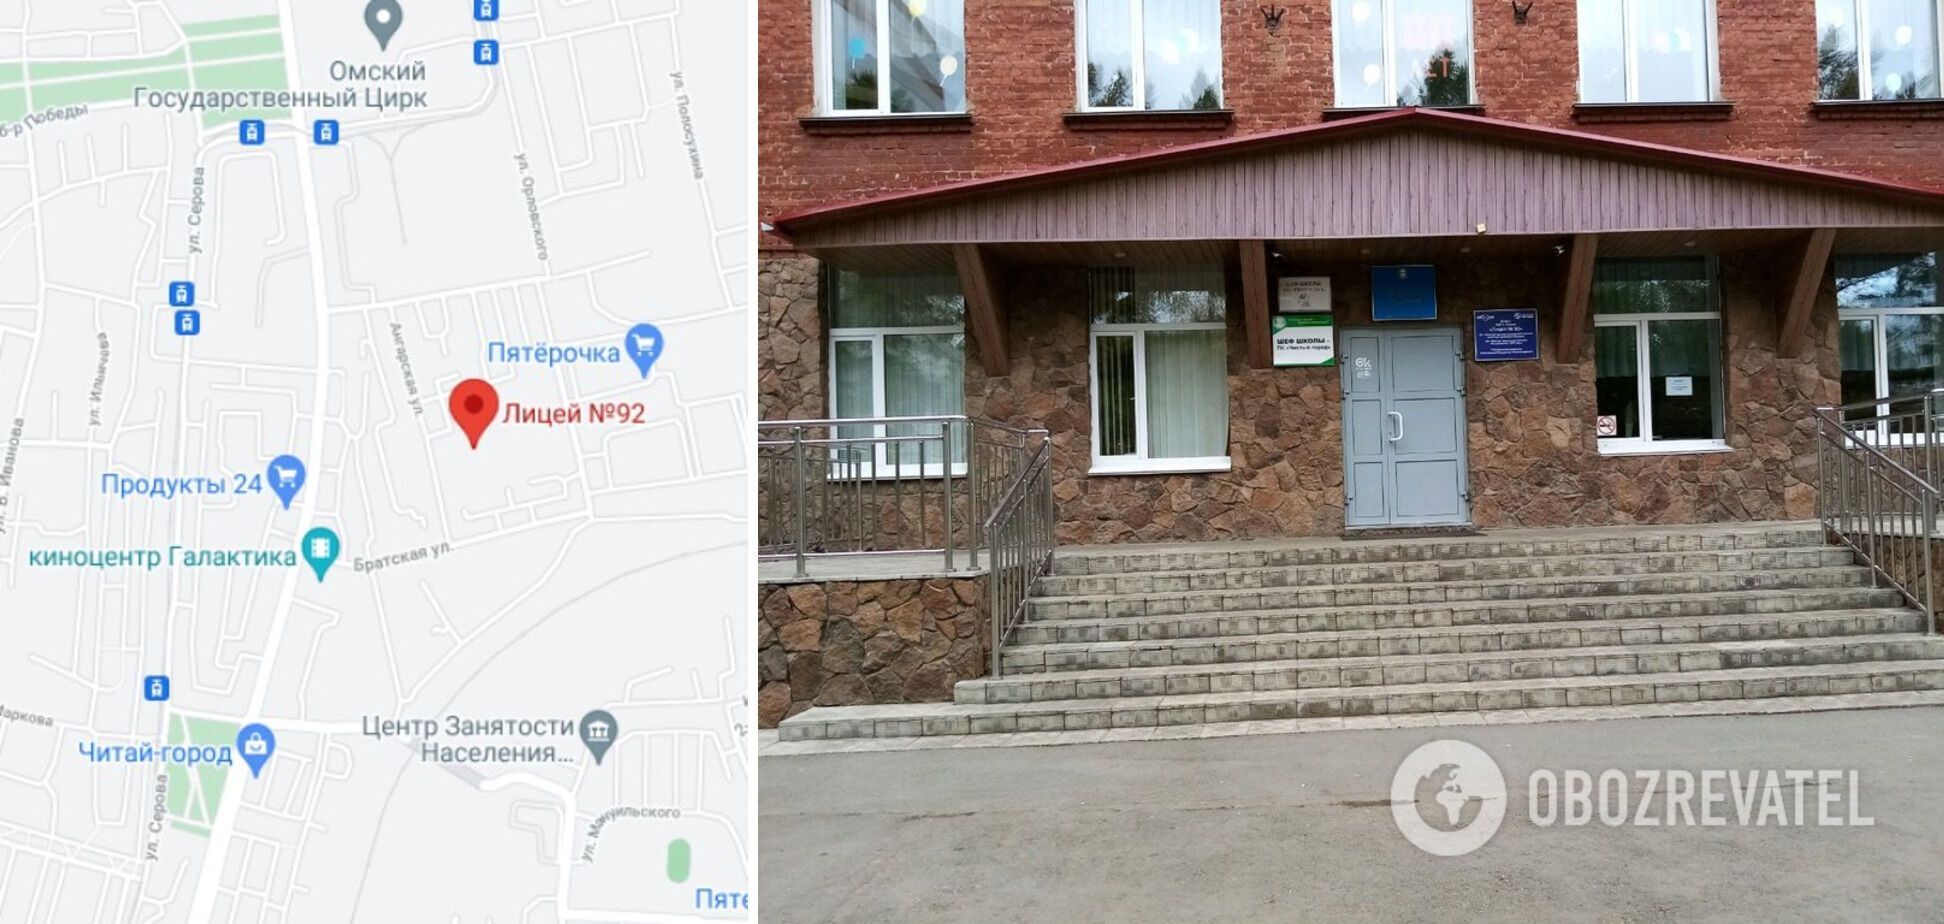 Школьница в Омске хотела подорвать свой лицей